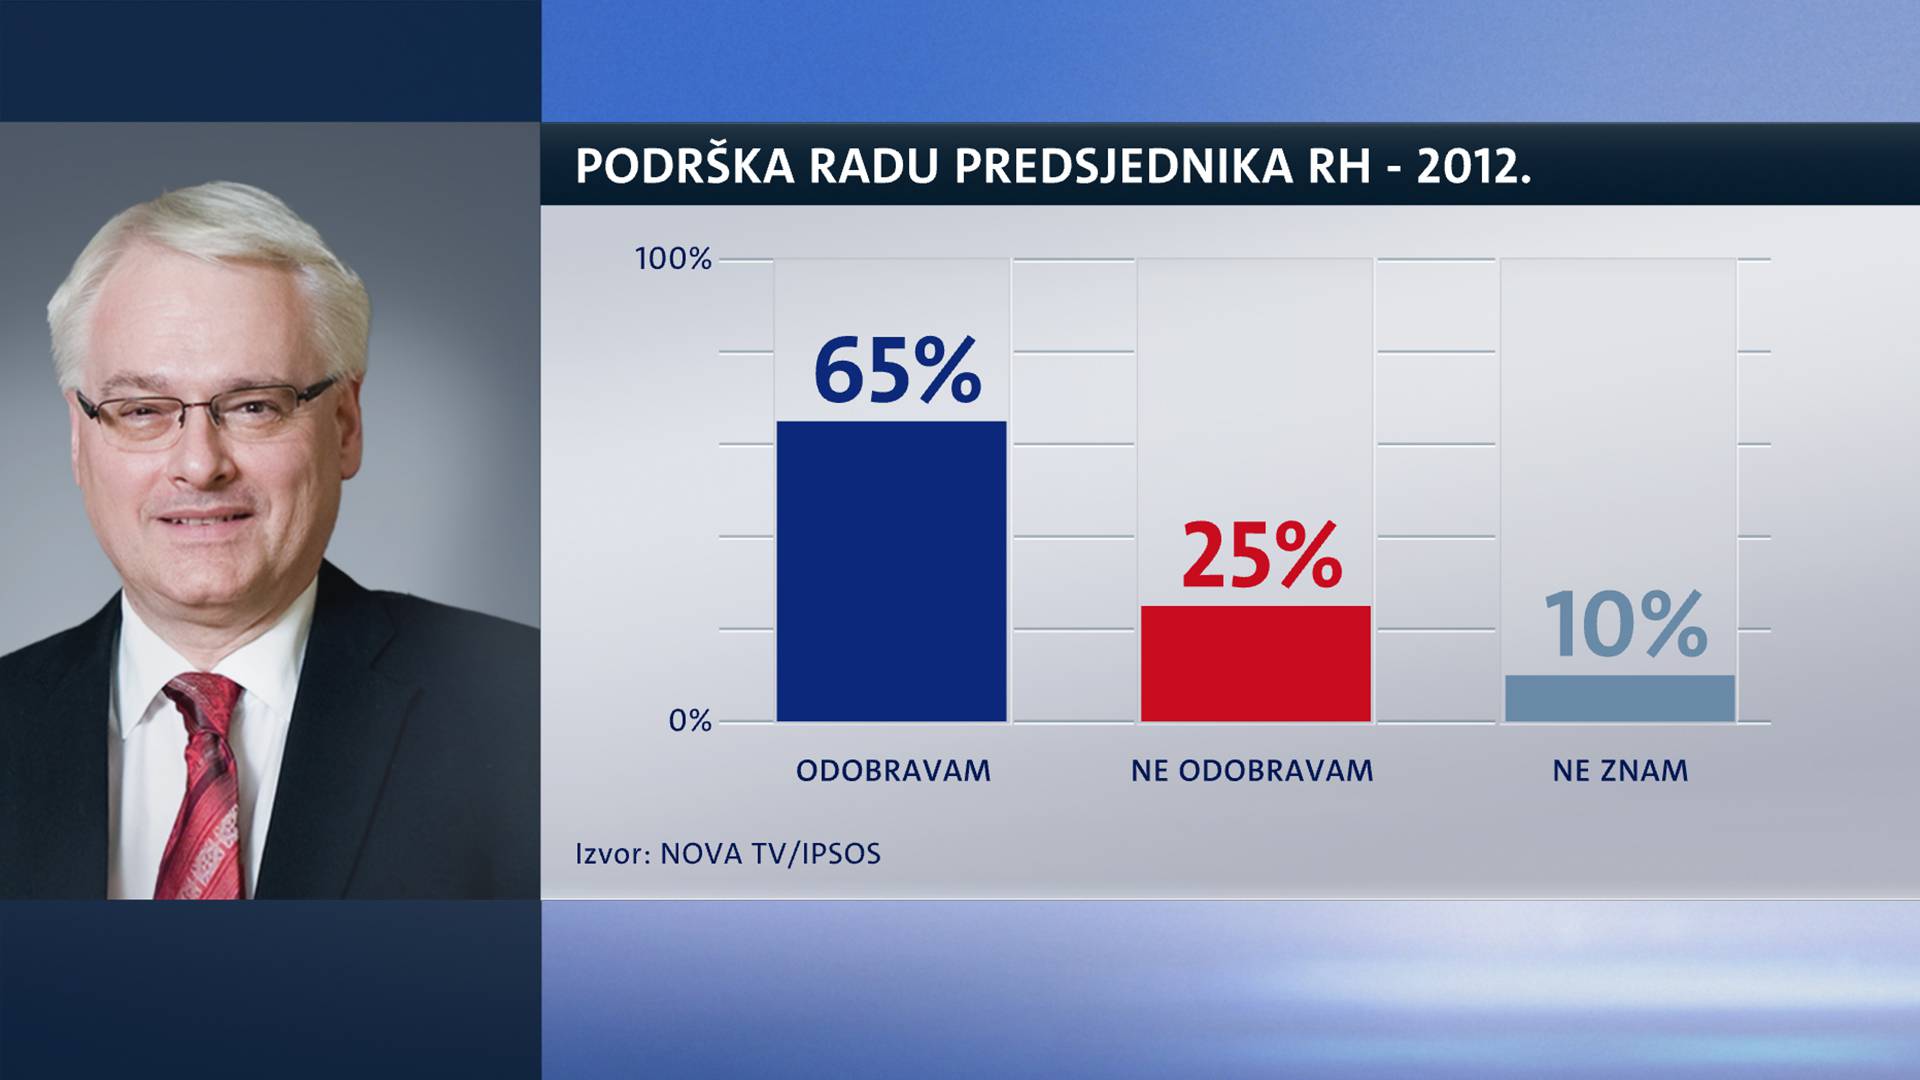 Potpora Plenkoviću pada, samo Kolindu većinom vide pozitivno